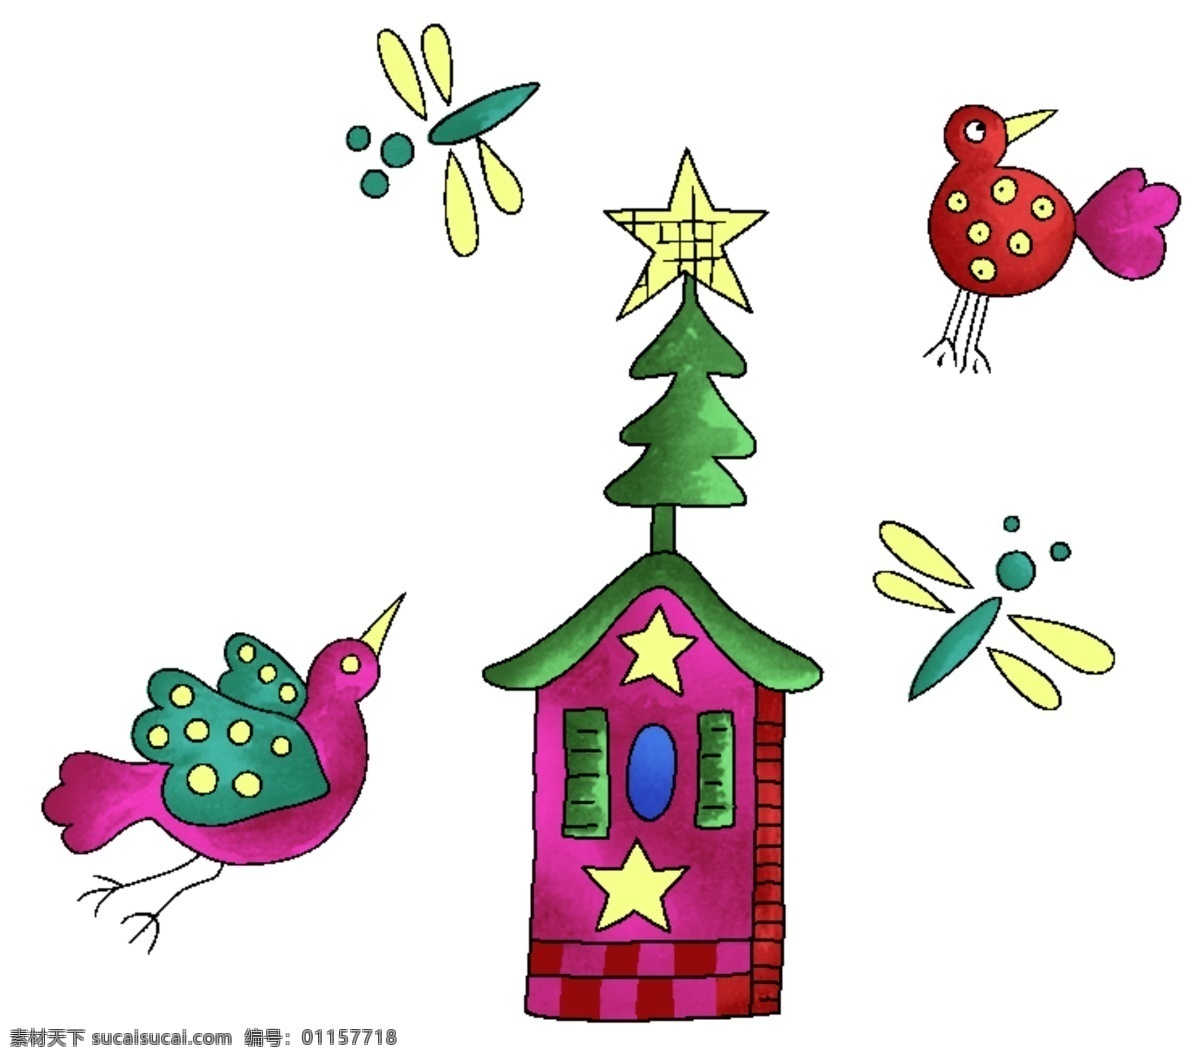 小鸟 动物昆虫 卡通漫画 分层 psd0004 设计素材 分层插画 psd源文件 白色